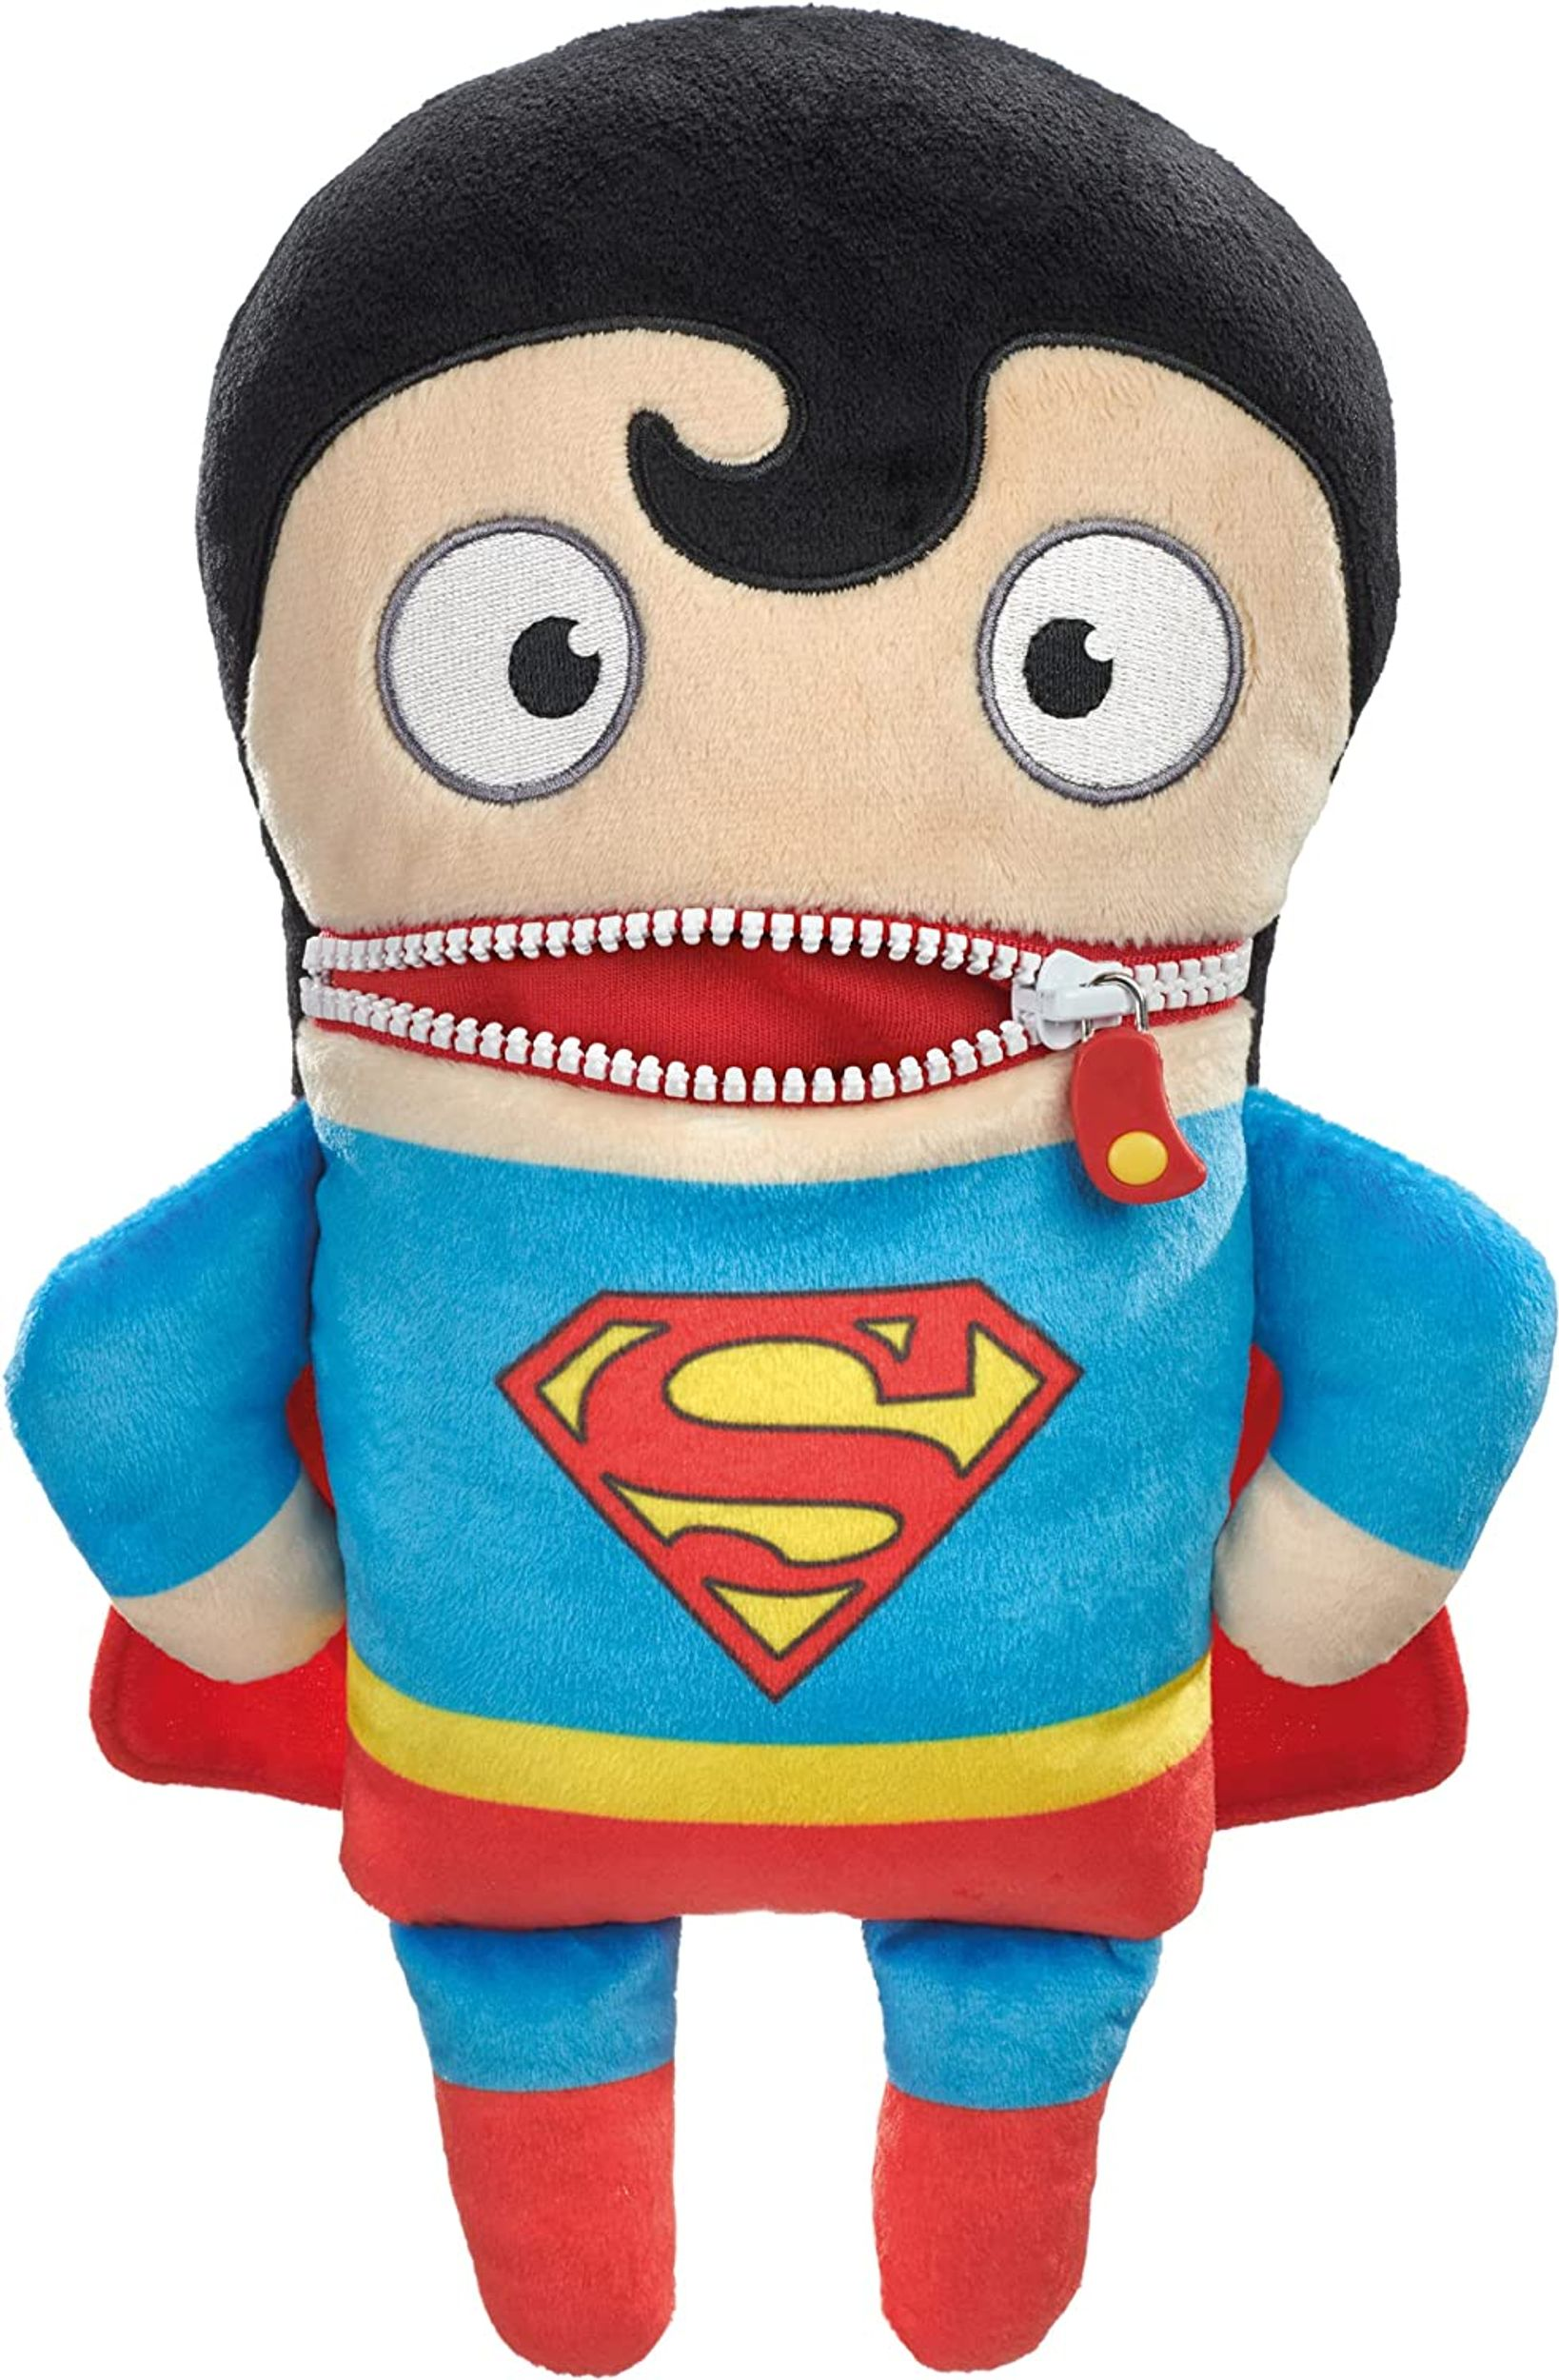 SCHMIDT SPIELE Sorgenfresser DC Super Hero Plüschfigur Superman